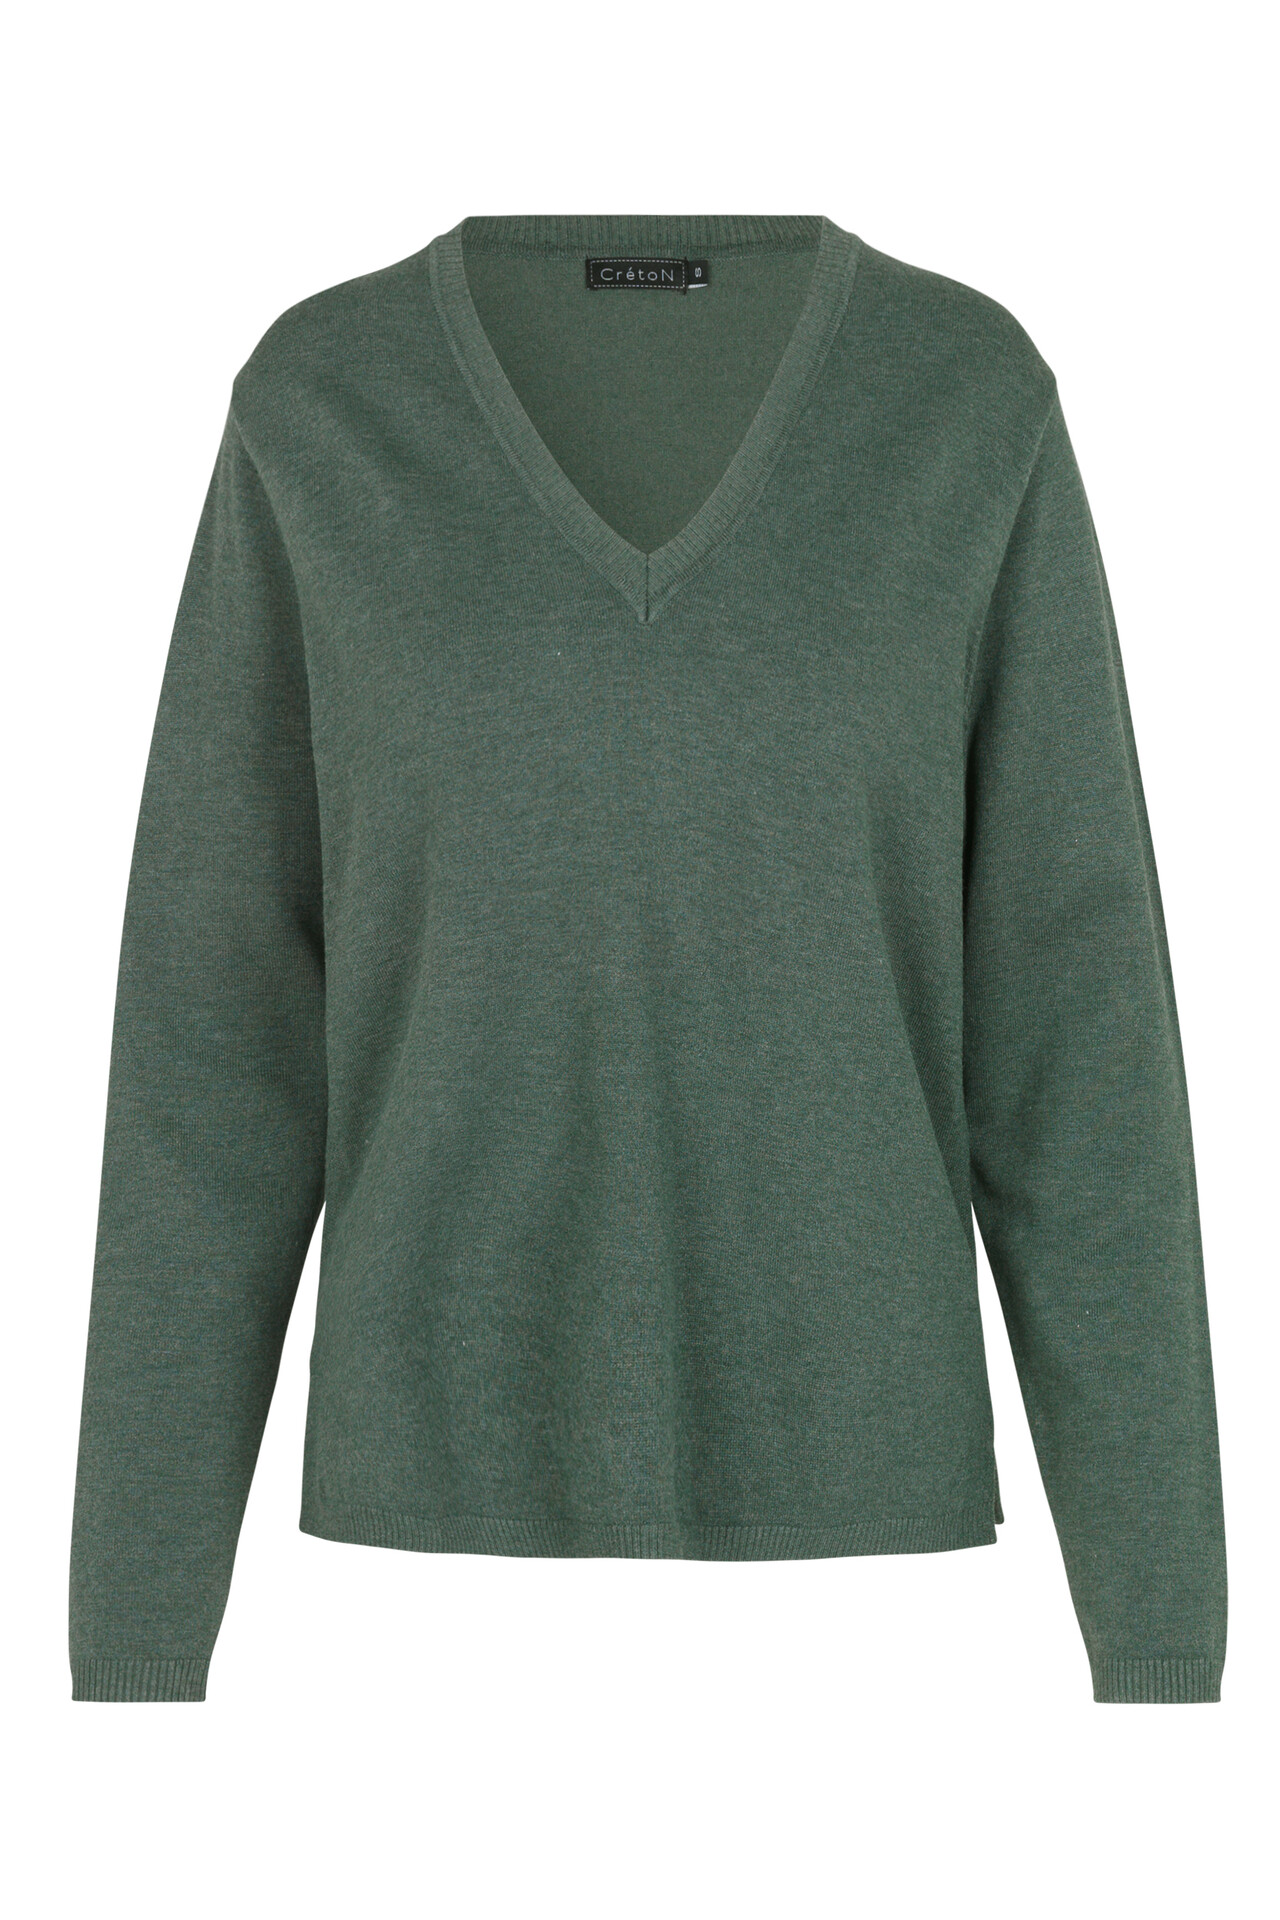 CRÉTON Wicky v-hals sweater (MØRK GRØN, L)